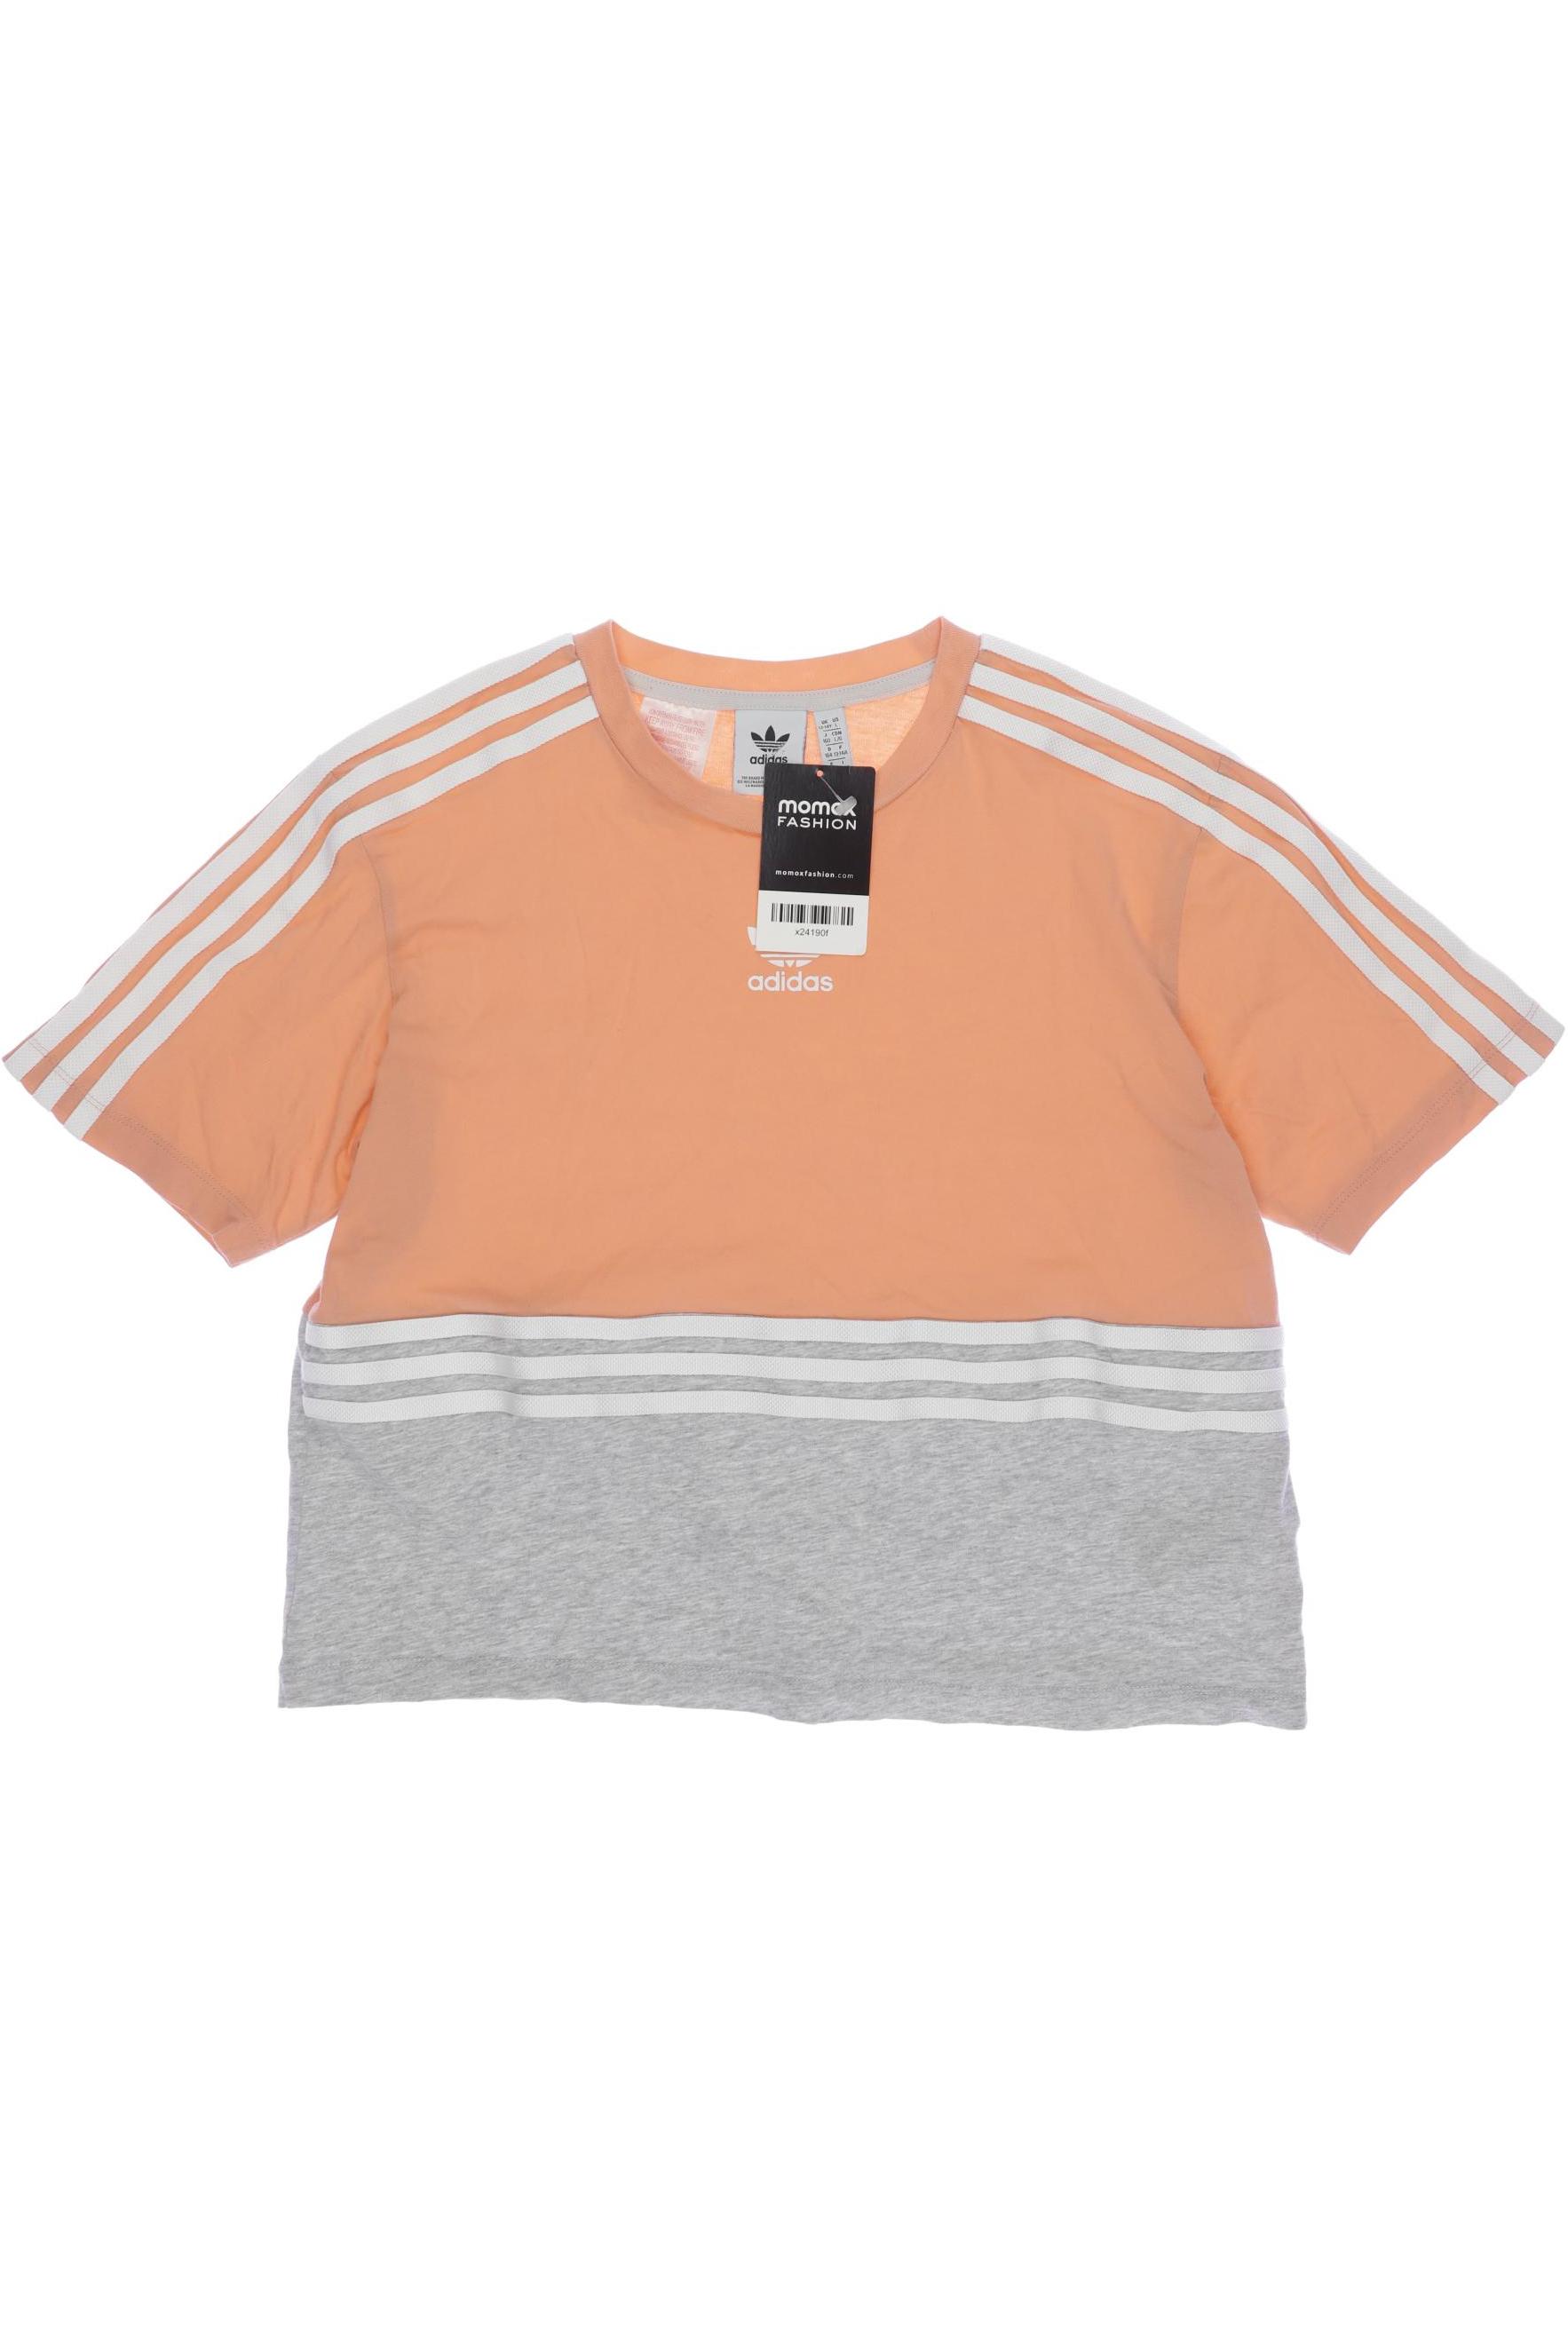 adidas Originals Mädchen T-Shirt, orange von adidas Originals